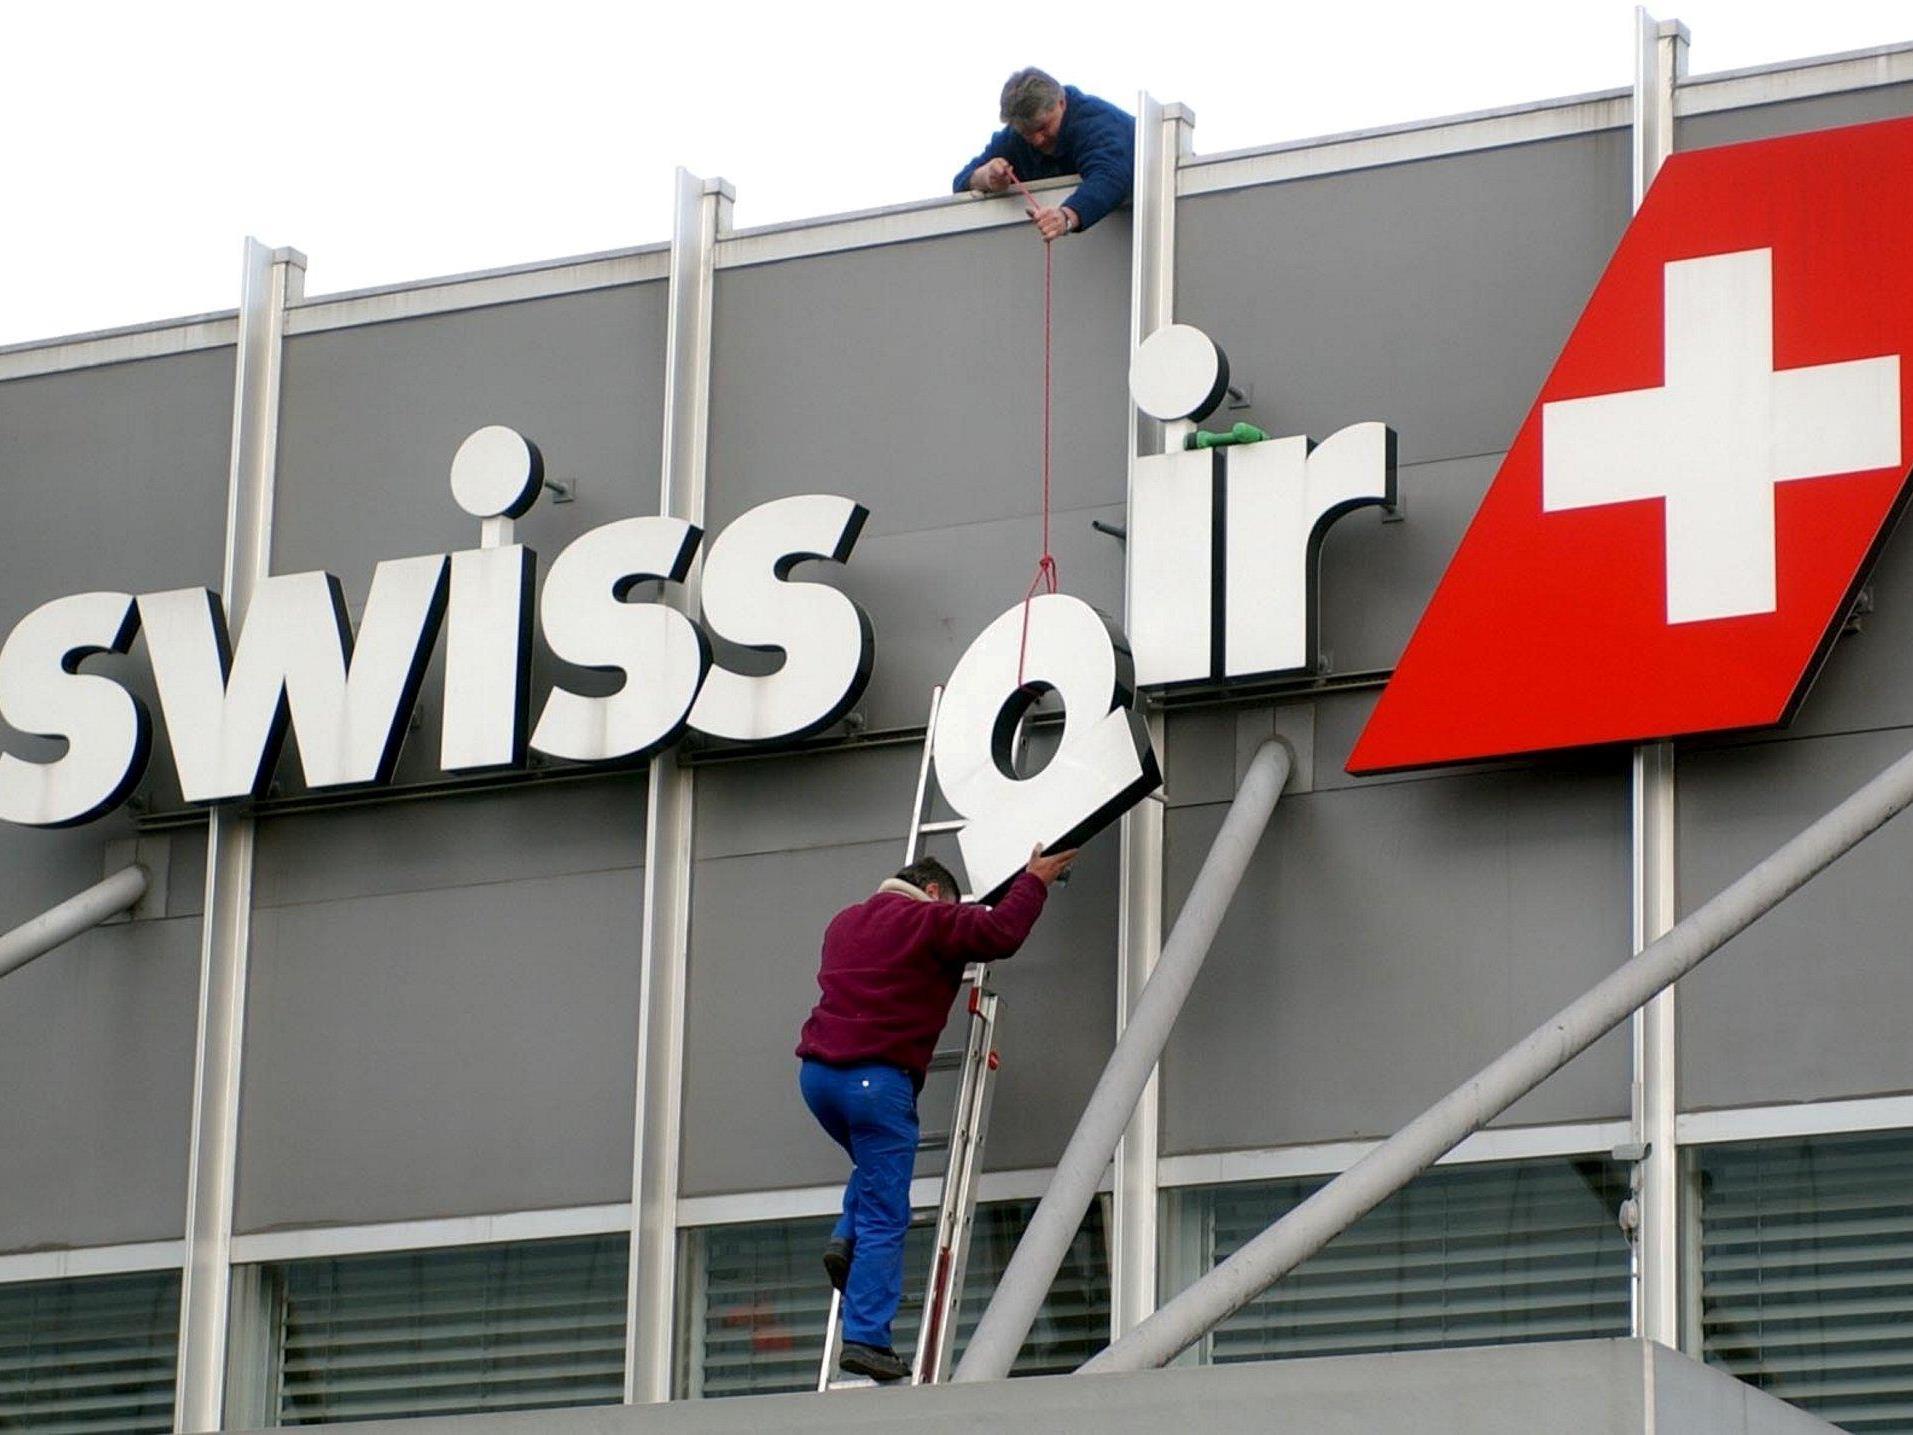 Grounding: Österreich-Niederlassung 13 Jahre nach Swissair-Debakel in Konkurs.